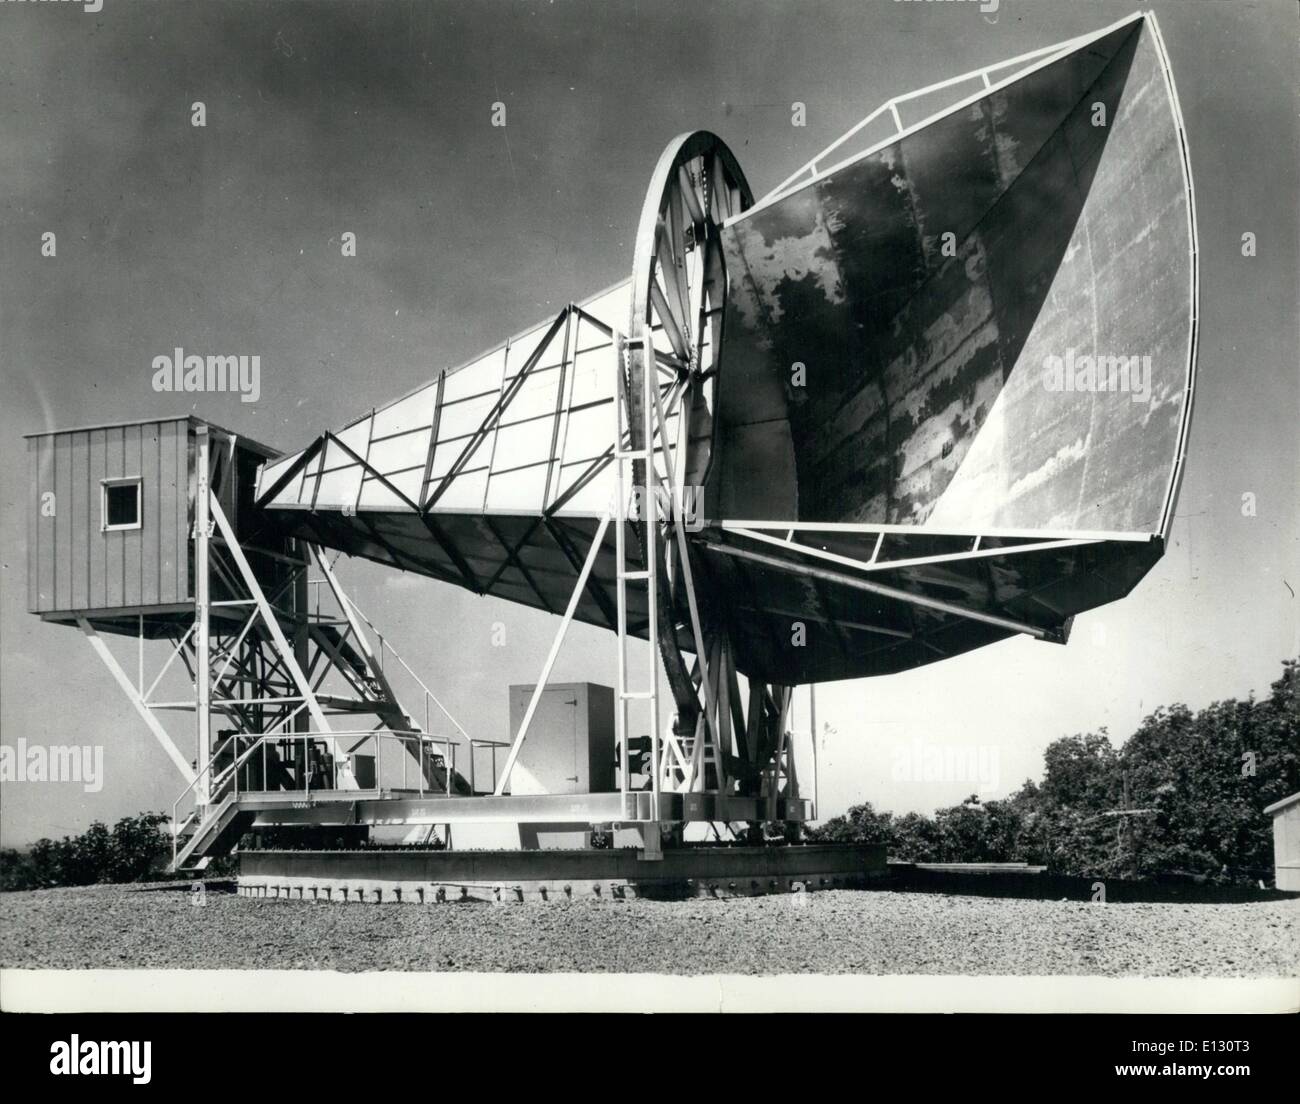 Le 26 février 2012 - Giant cornet acoustique pour l'espace. : cette grande ''cornet acoustique'' est l'un des plus sensibles des hydrophones. Construit pour capter les sons de l'espace le 50-pieds de long de l'antenne tournante est situé à l'espace du système de Téléphone Bell research laboratory à Holmdel (New Jersey). L'encadré à la fin de la trompette abrite un amplificateur maser ruby réfrigérés à 456 degrés Fahrenheit au-dessous de zéro. Le récepteur occupe une place importante dans l'écho et projets satellites Telstar Banque D'Images